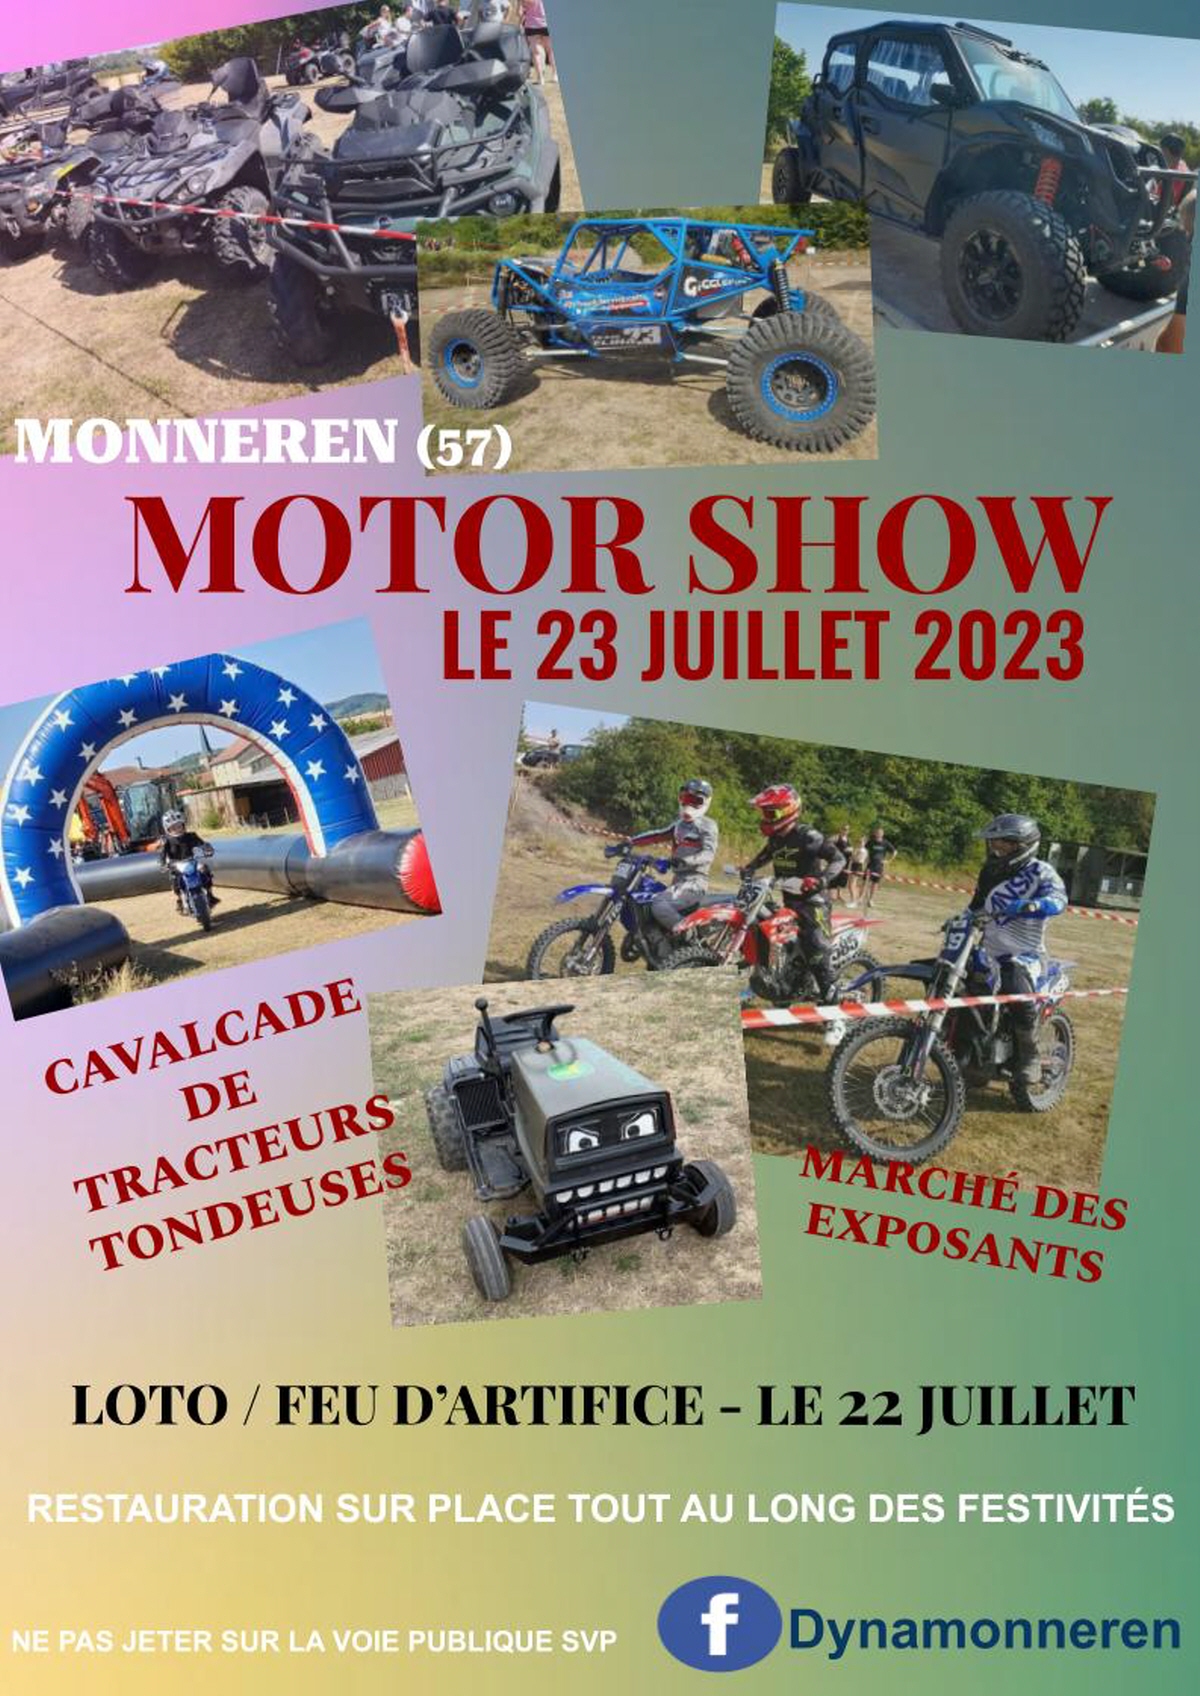 2023-07-16-Monneren-Motor-Show - 23 juillet 2023 - rassemblement Monneren Motor Show